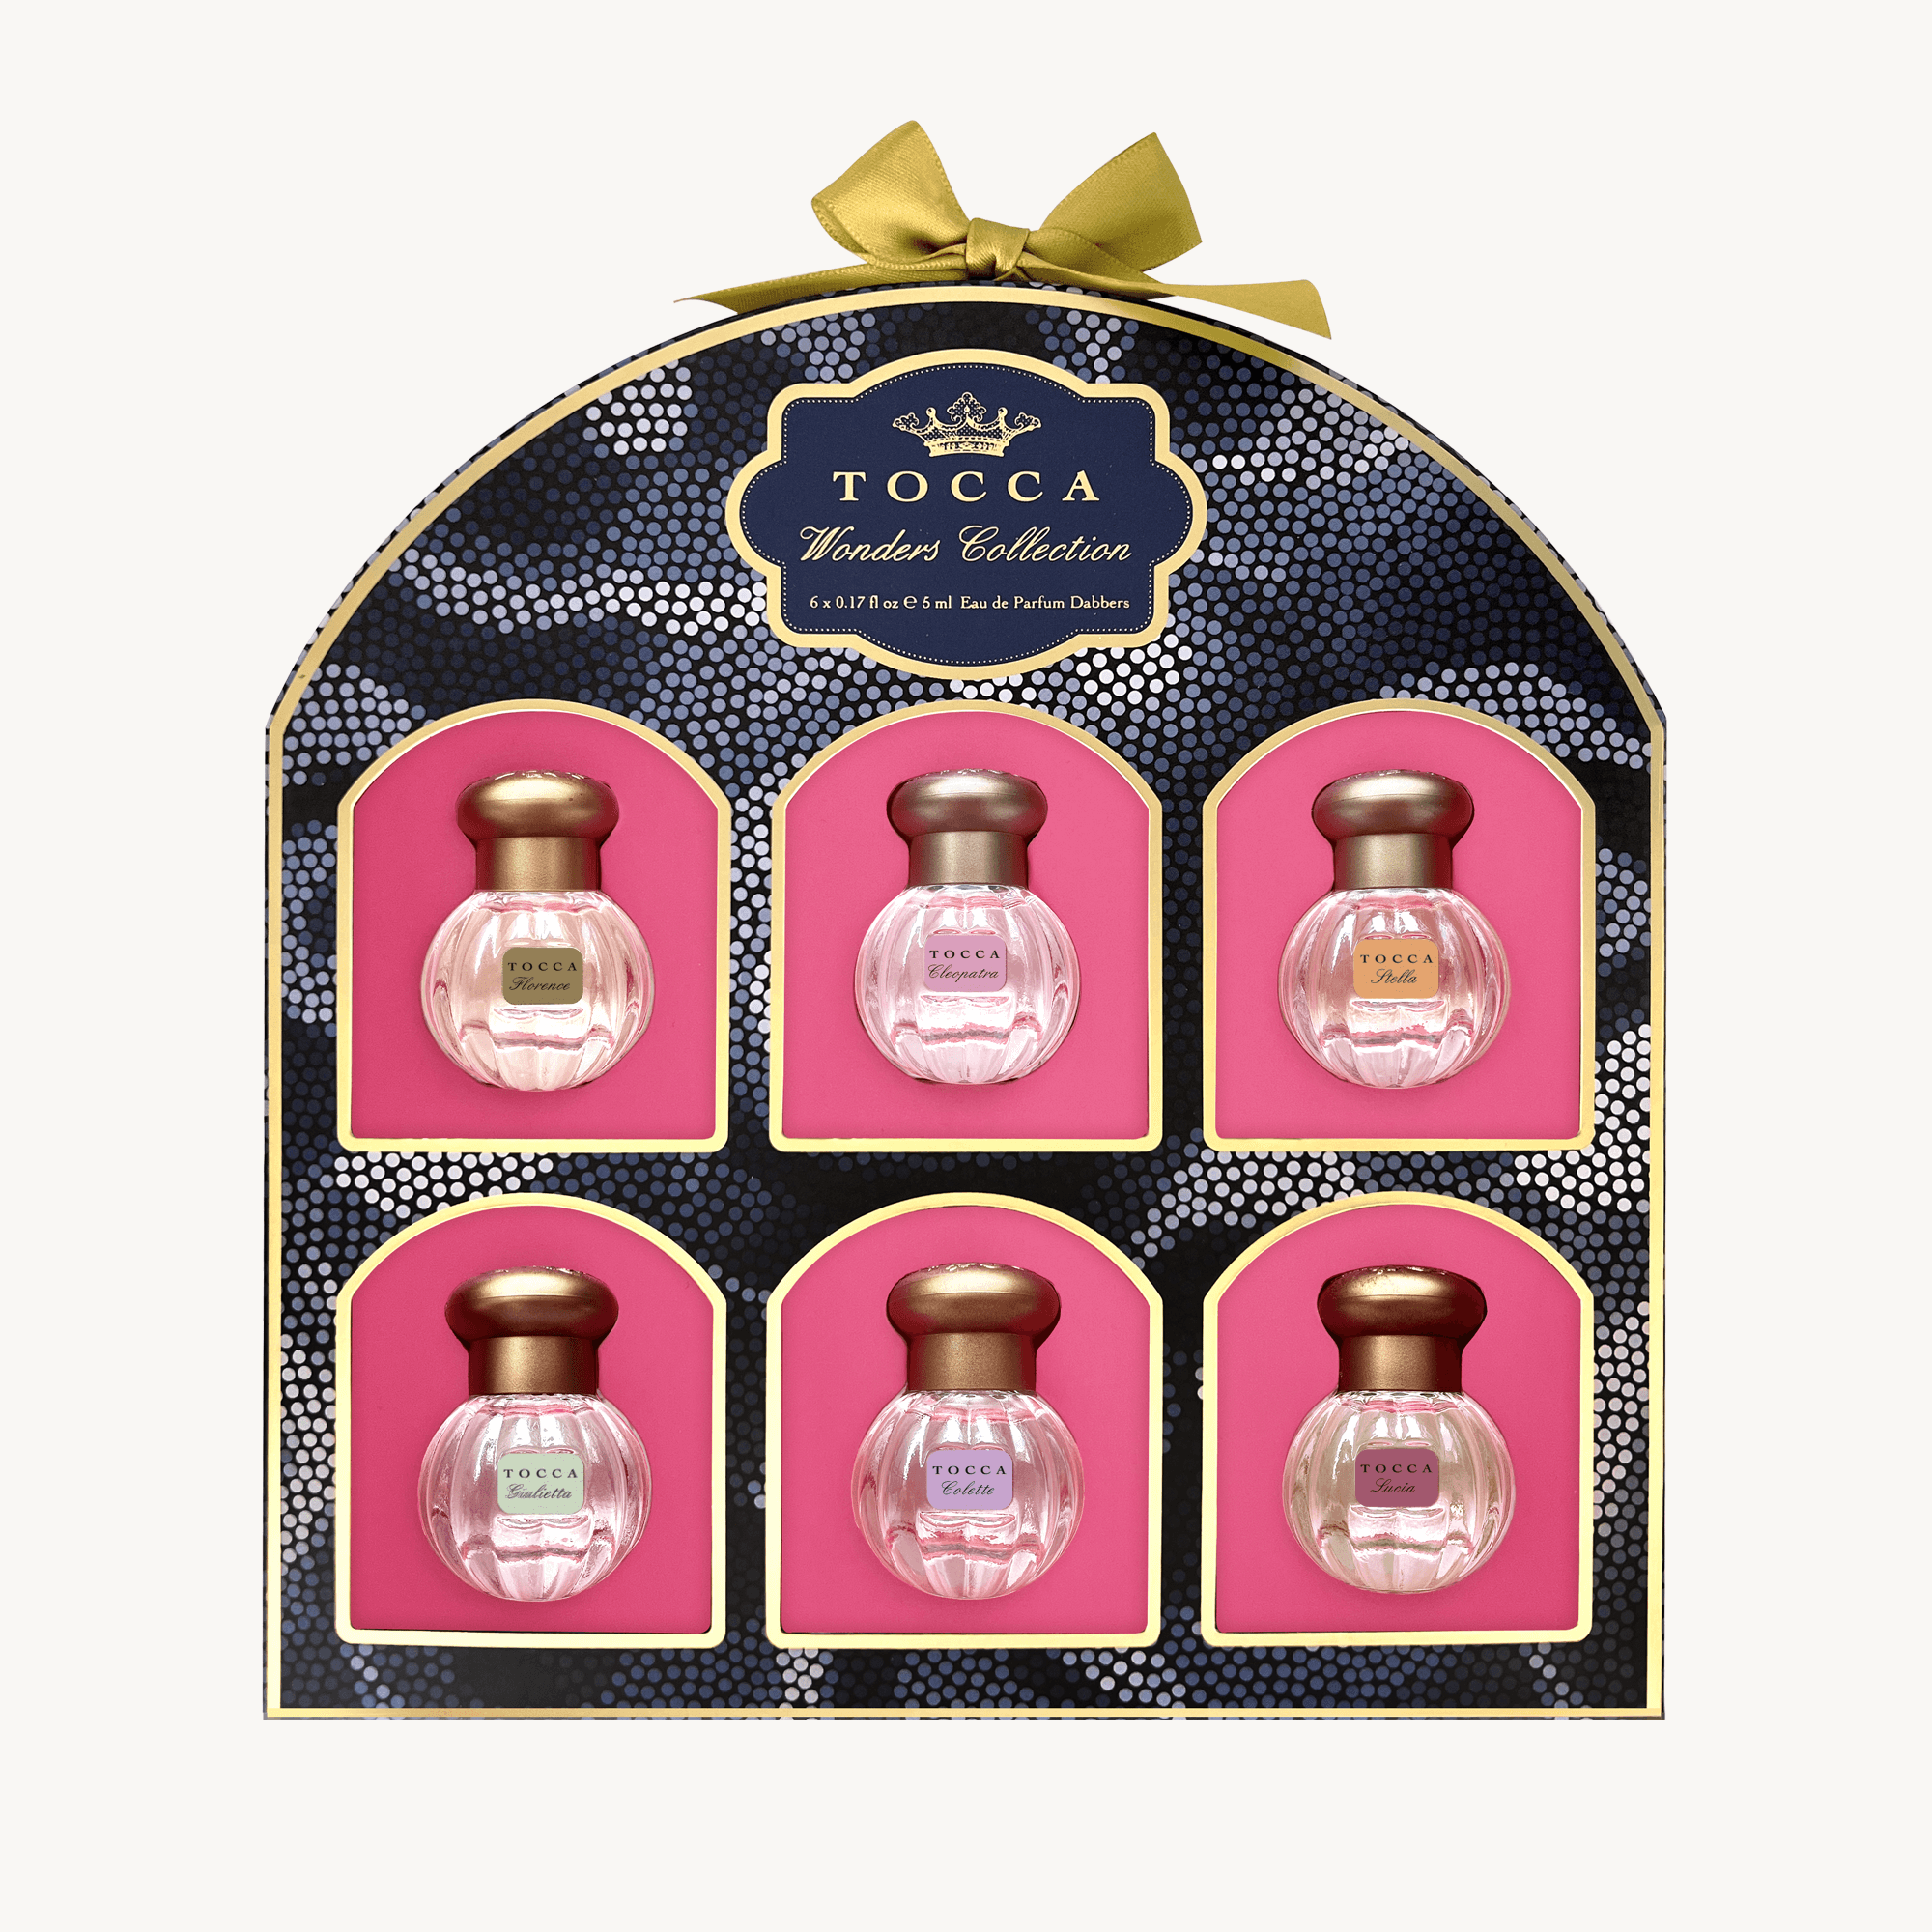 Parfum Miniature Set 